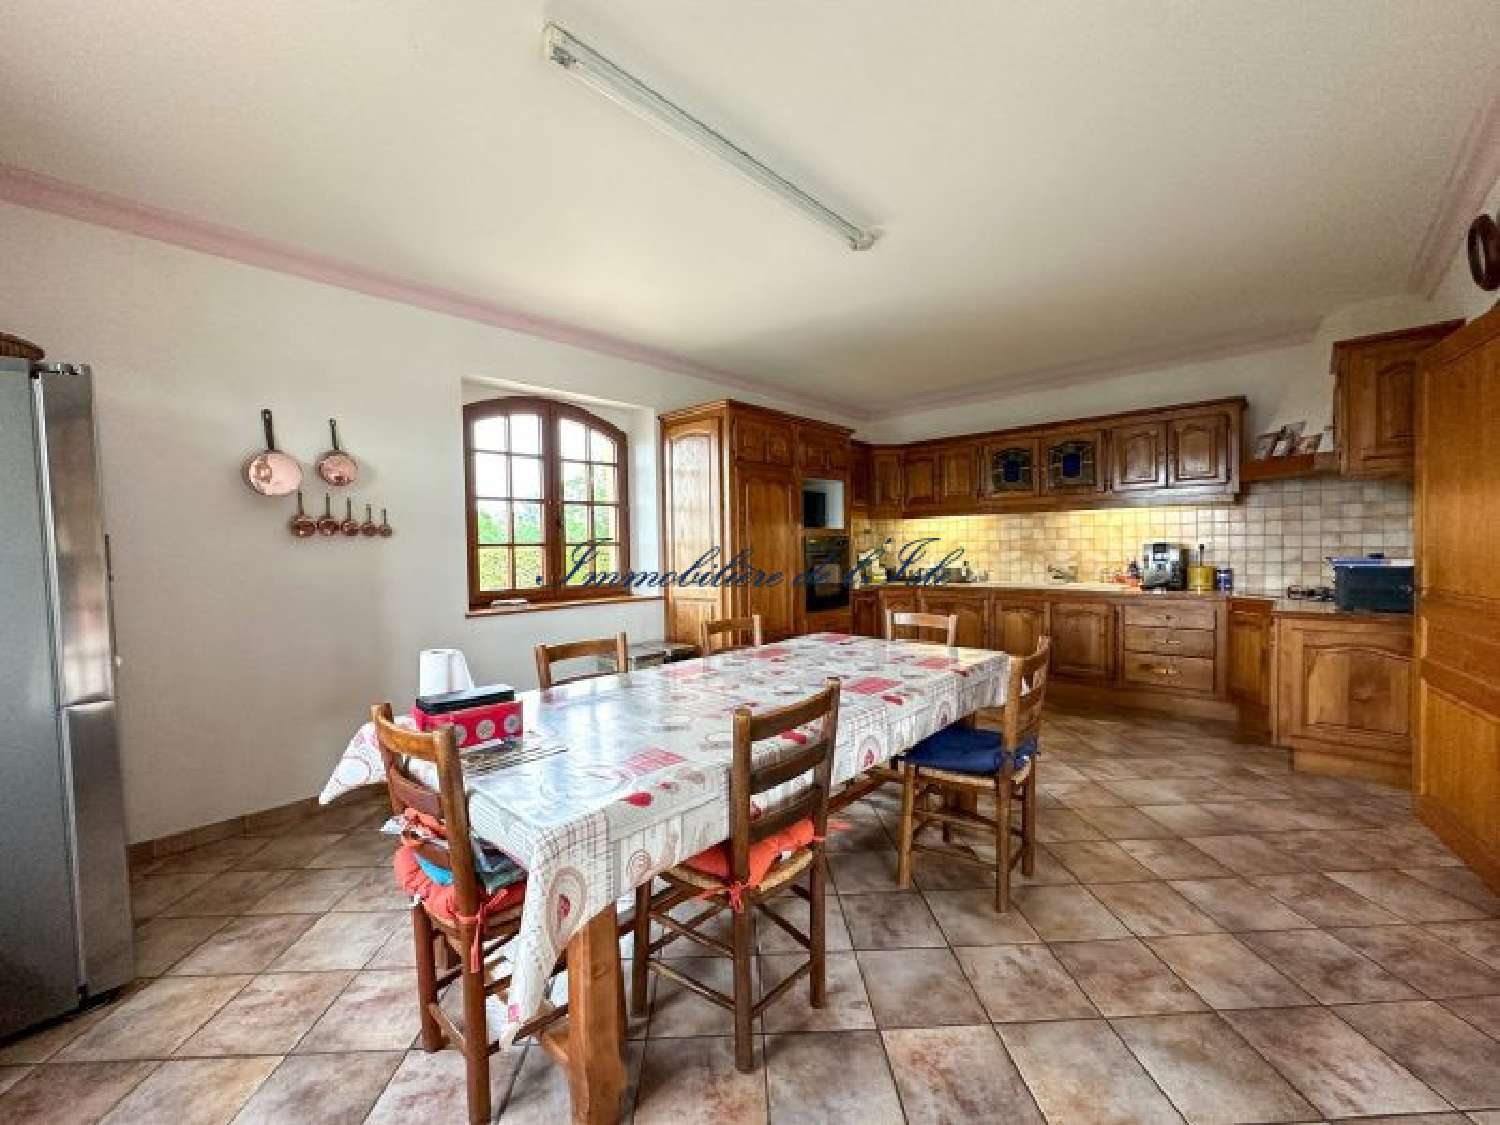  à vendre maison Montrem Dordogne 6